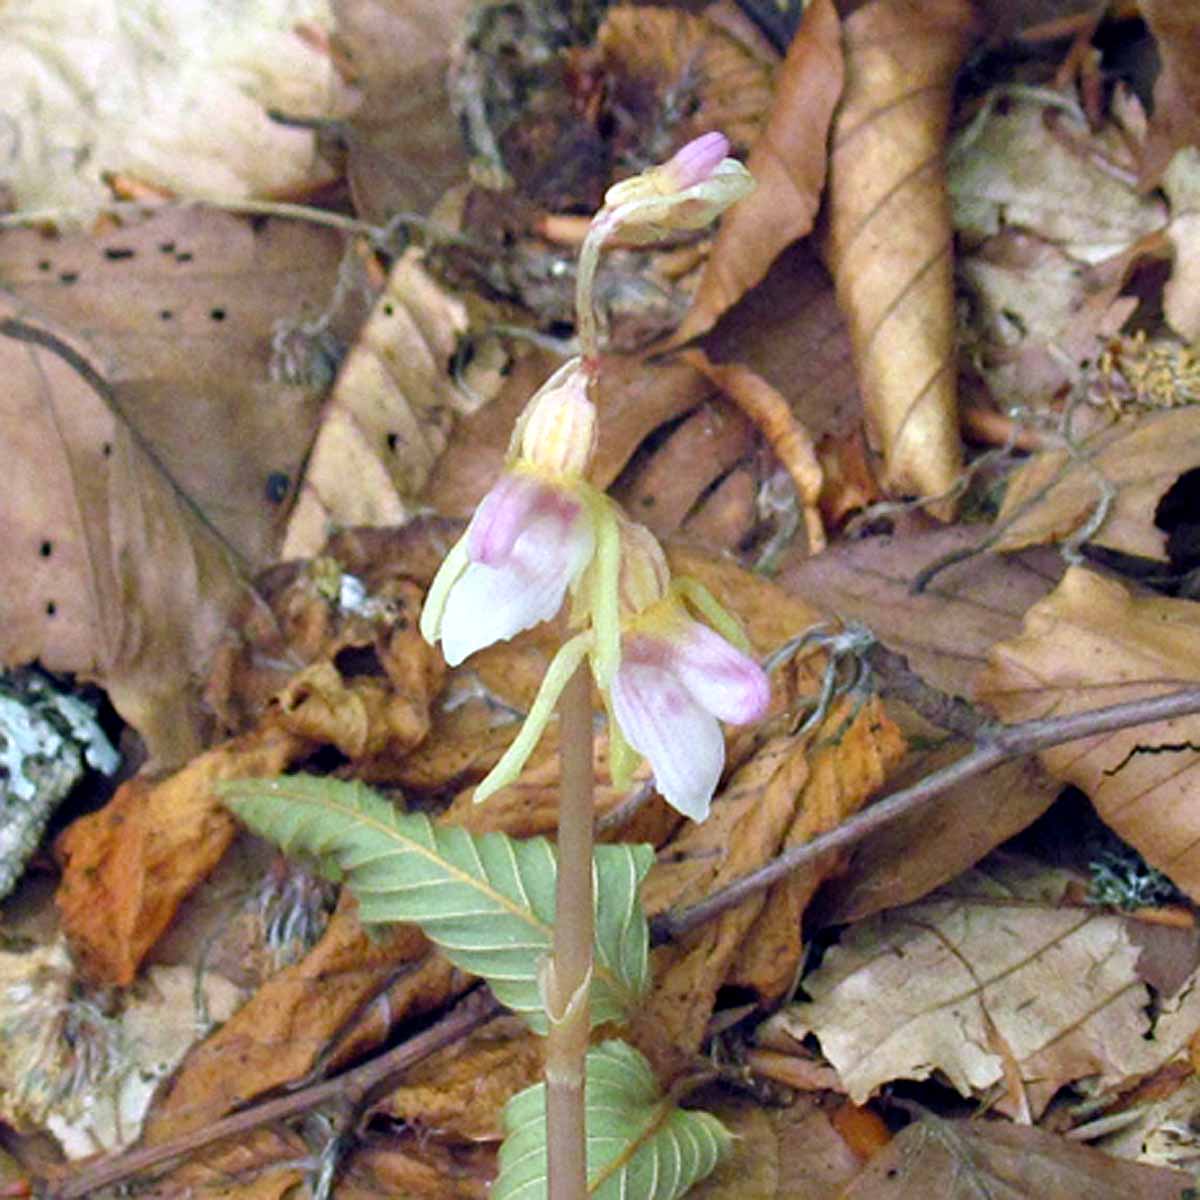 L’orchidea fantasma, priva di foglie e clorofilla